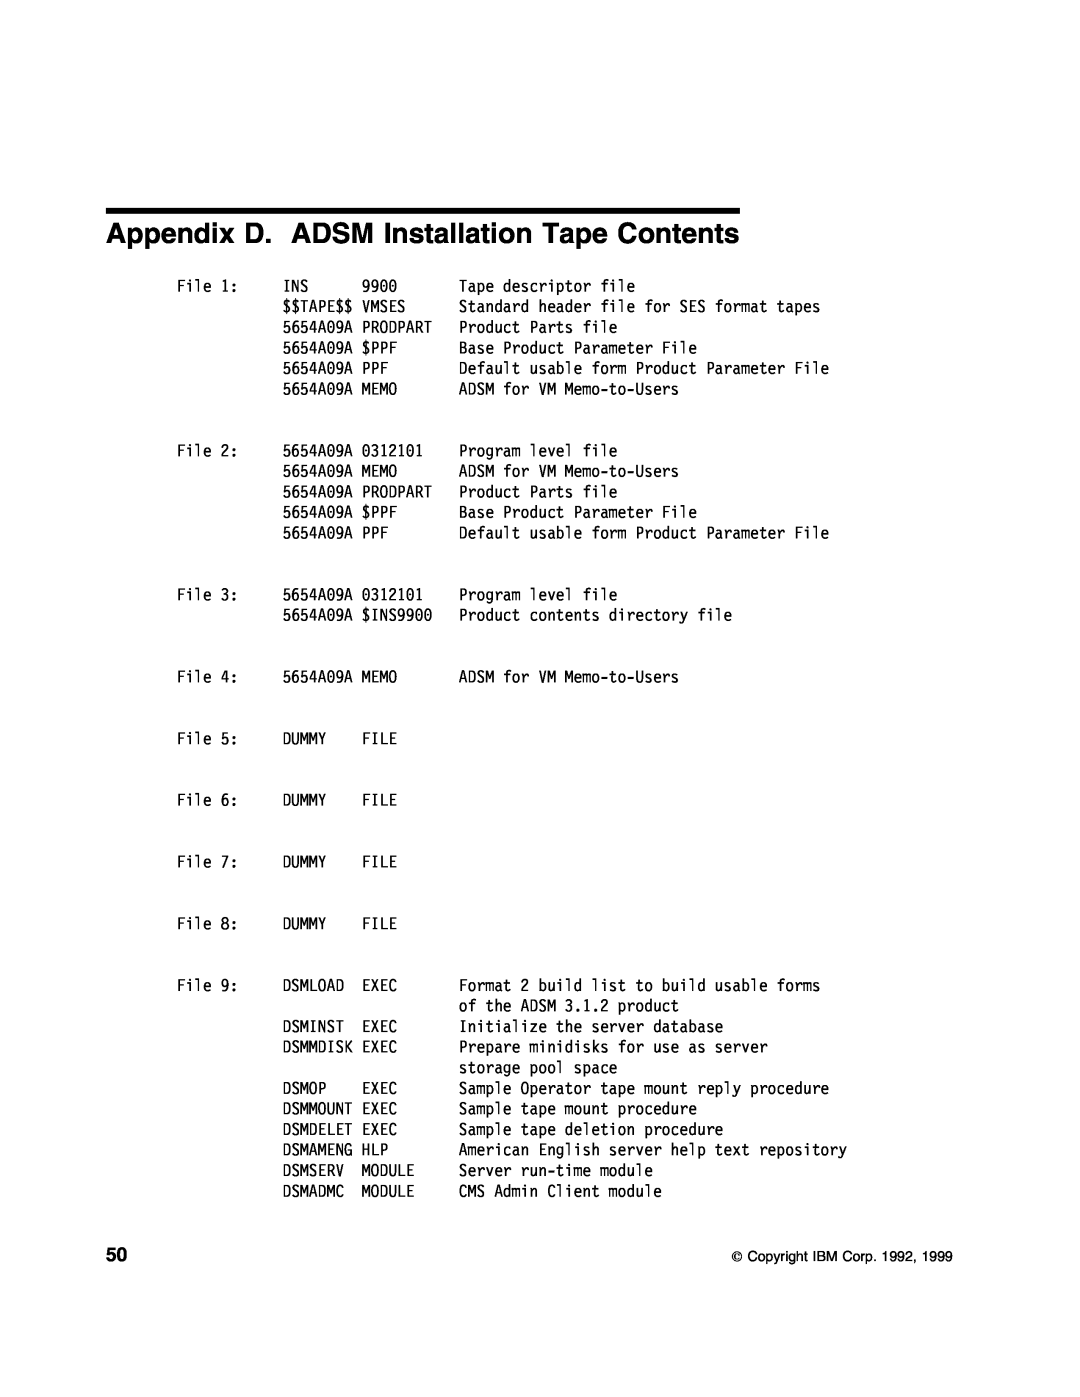 IBM 5697-VM3 manual Appendix D. ADSM Installation Tape Contents, Dsminst 